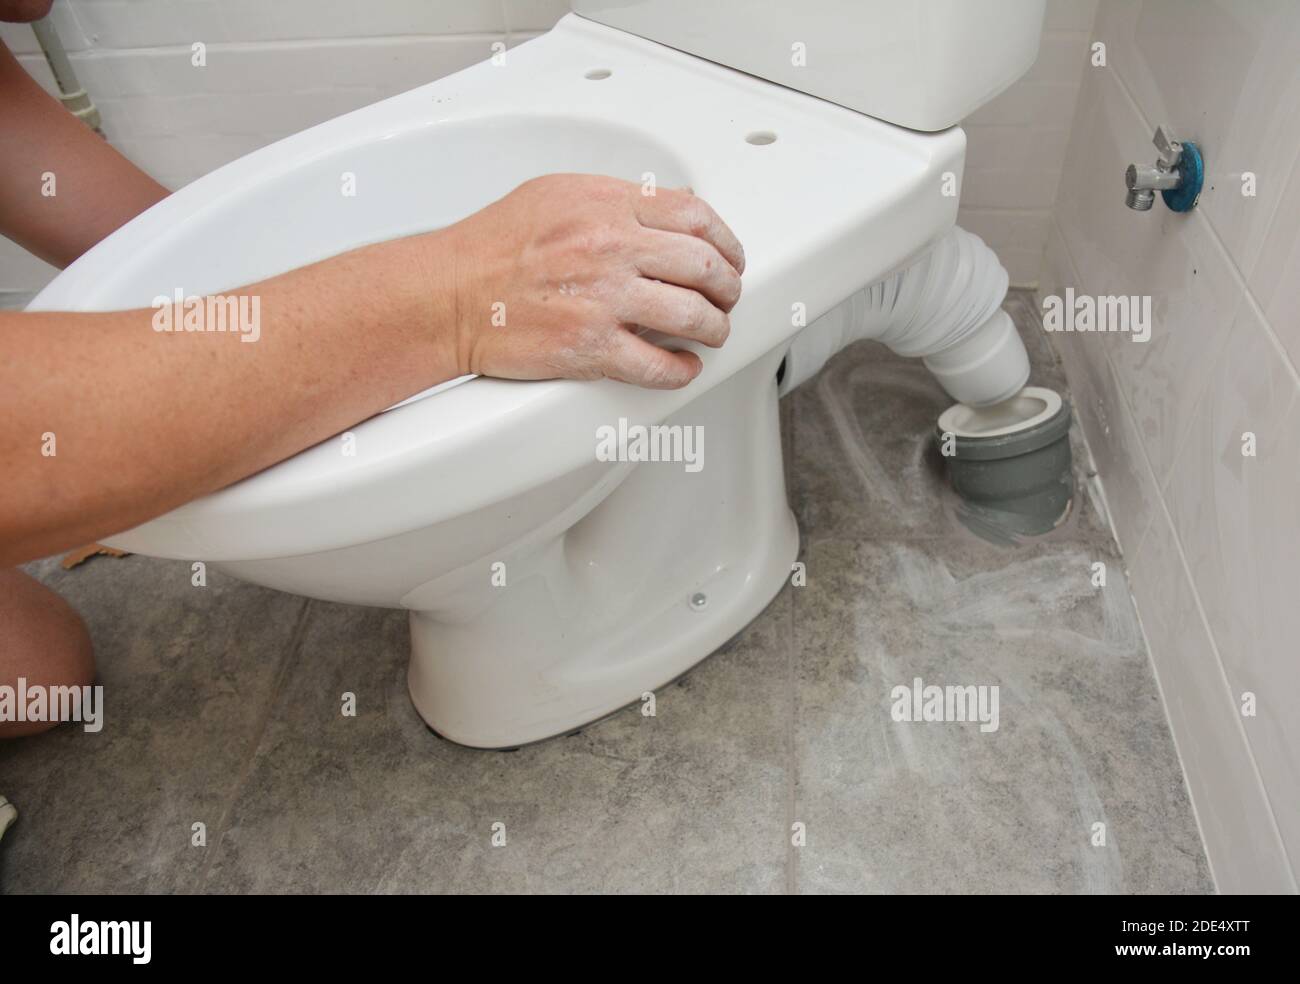 Réparateur installant des toilettes à chasse d'eau, cuvette de toilettes dans la salle de bains. Banque D'Images